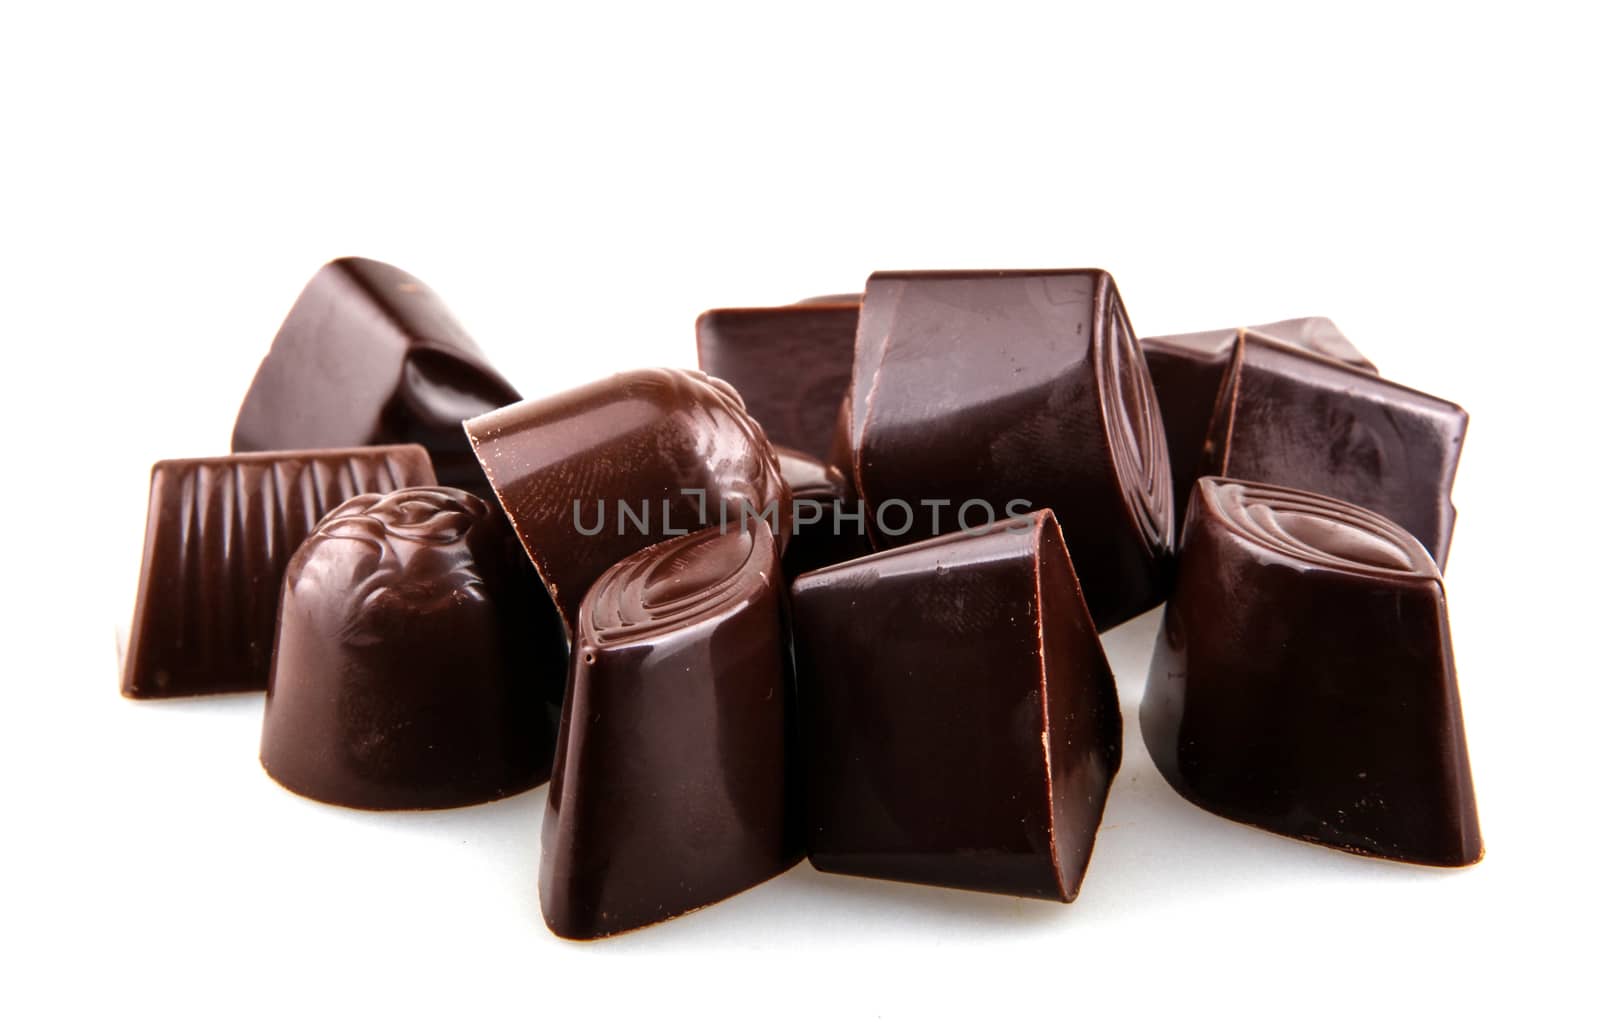 Chocolates by nenov